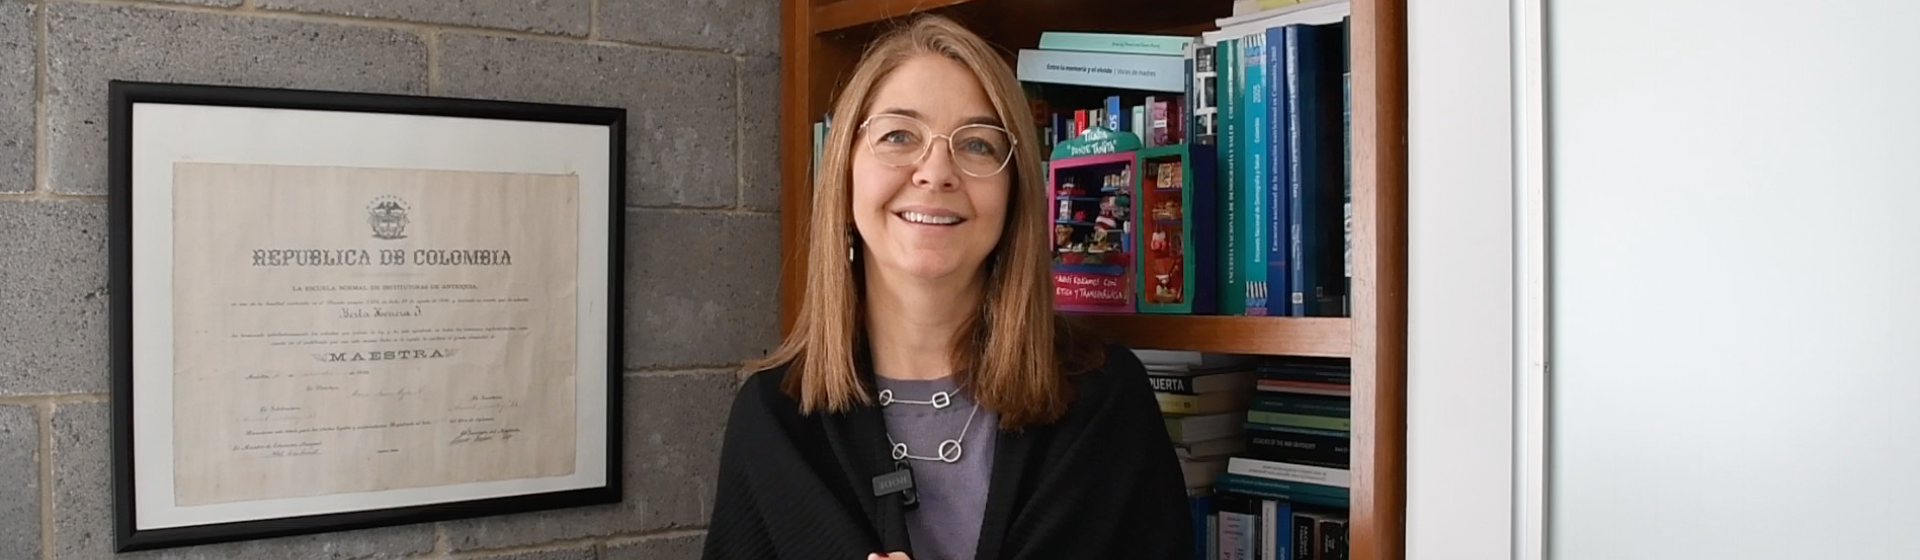 Sandra García, promovida a profesora titular de la Universidad de los Andes 